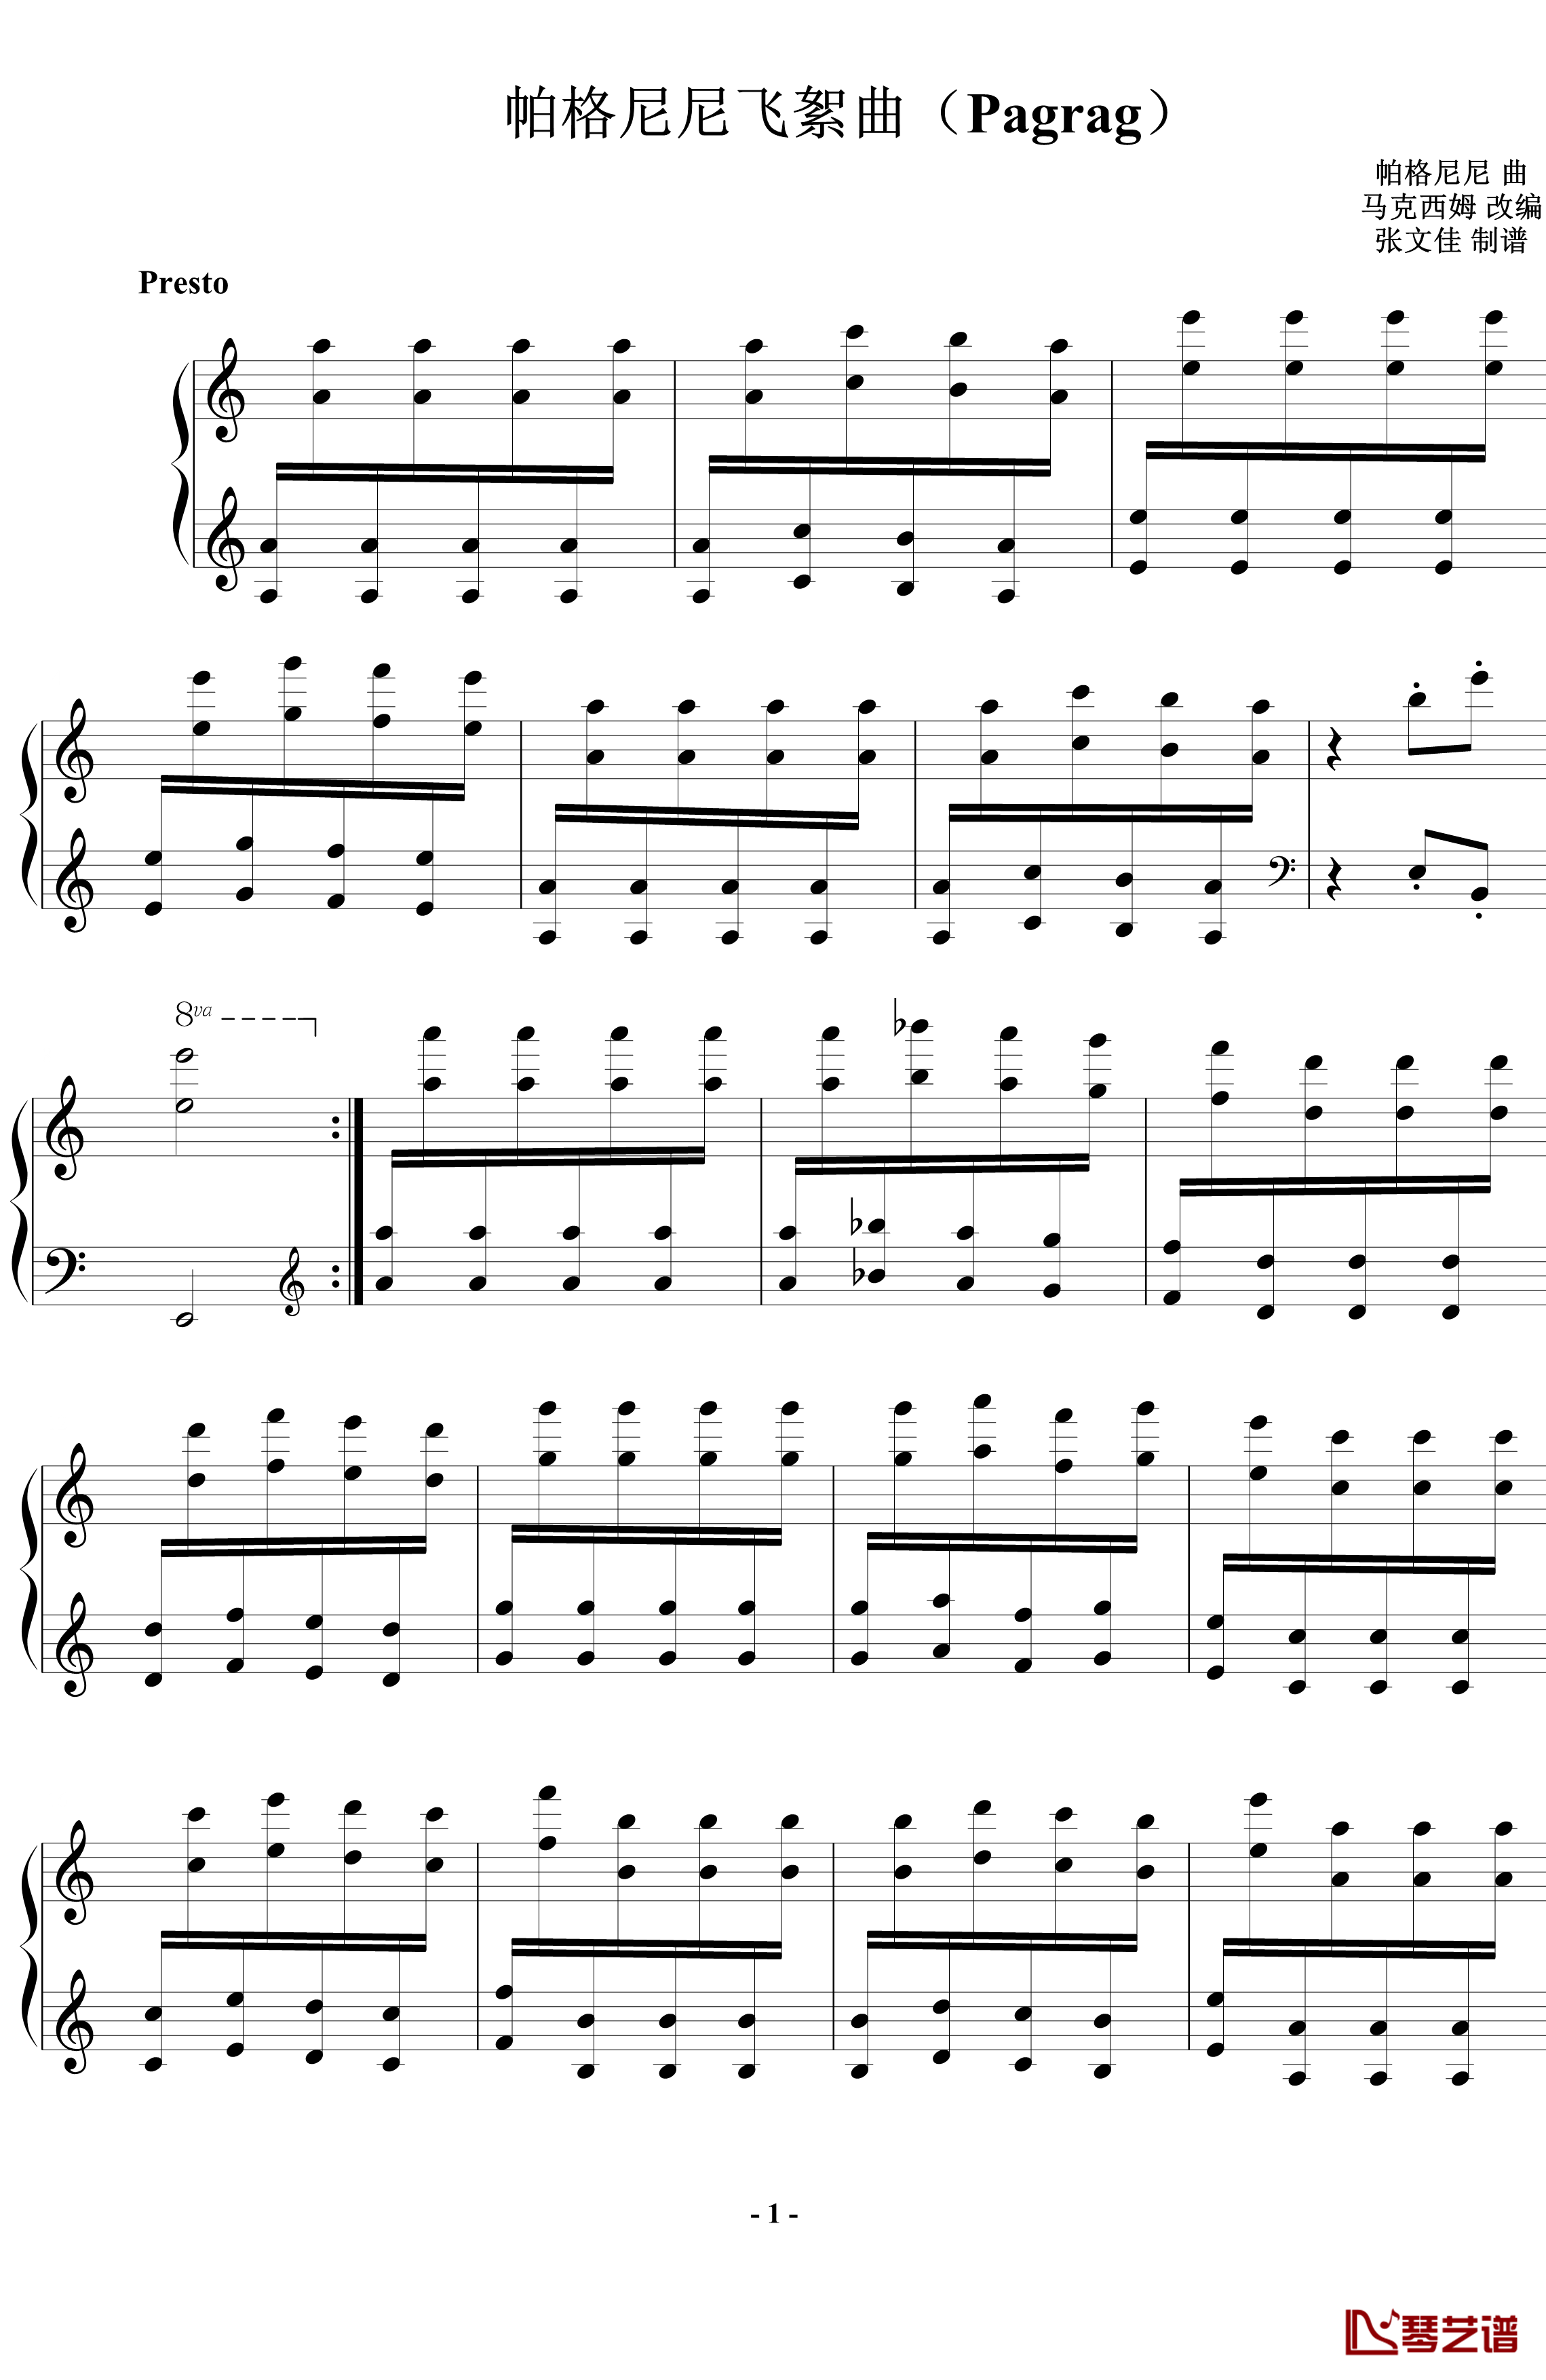 帕格尼尼飞絮曲钢琴谱-标准版-马克西姆-Maksim·Mrvica1